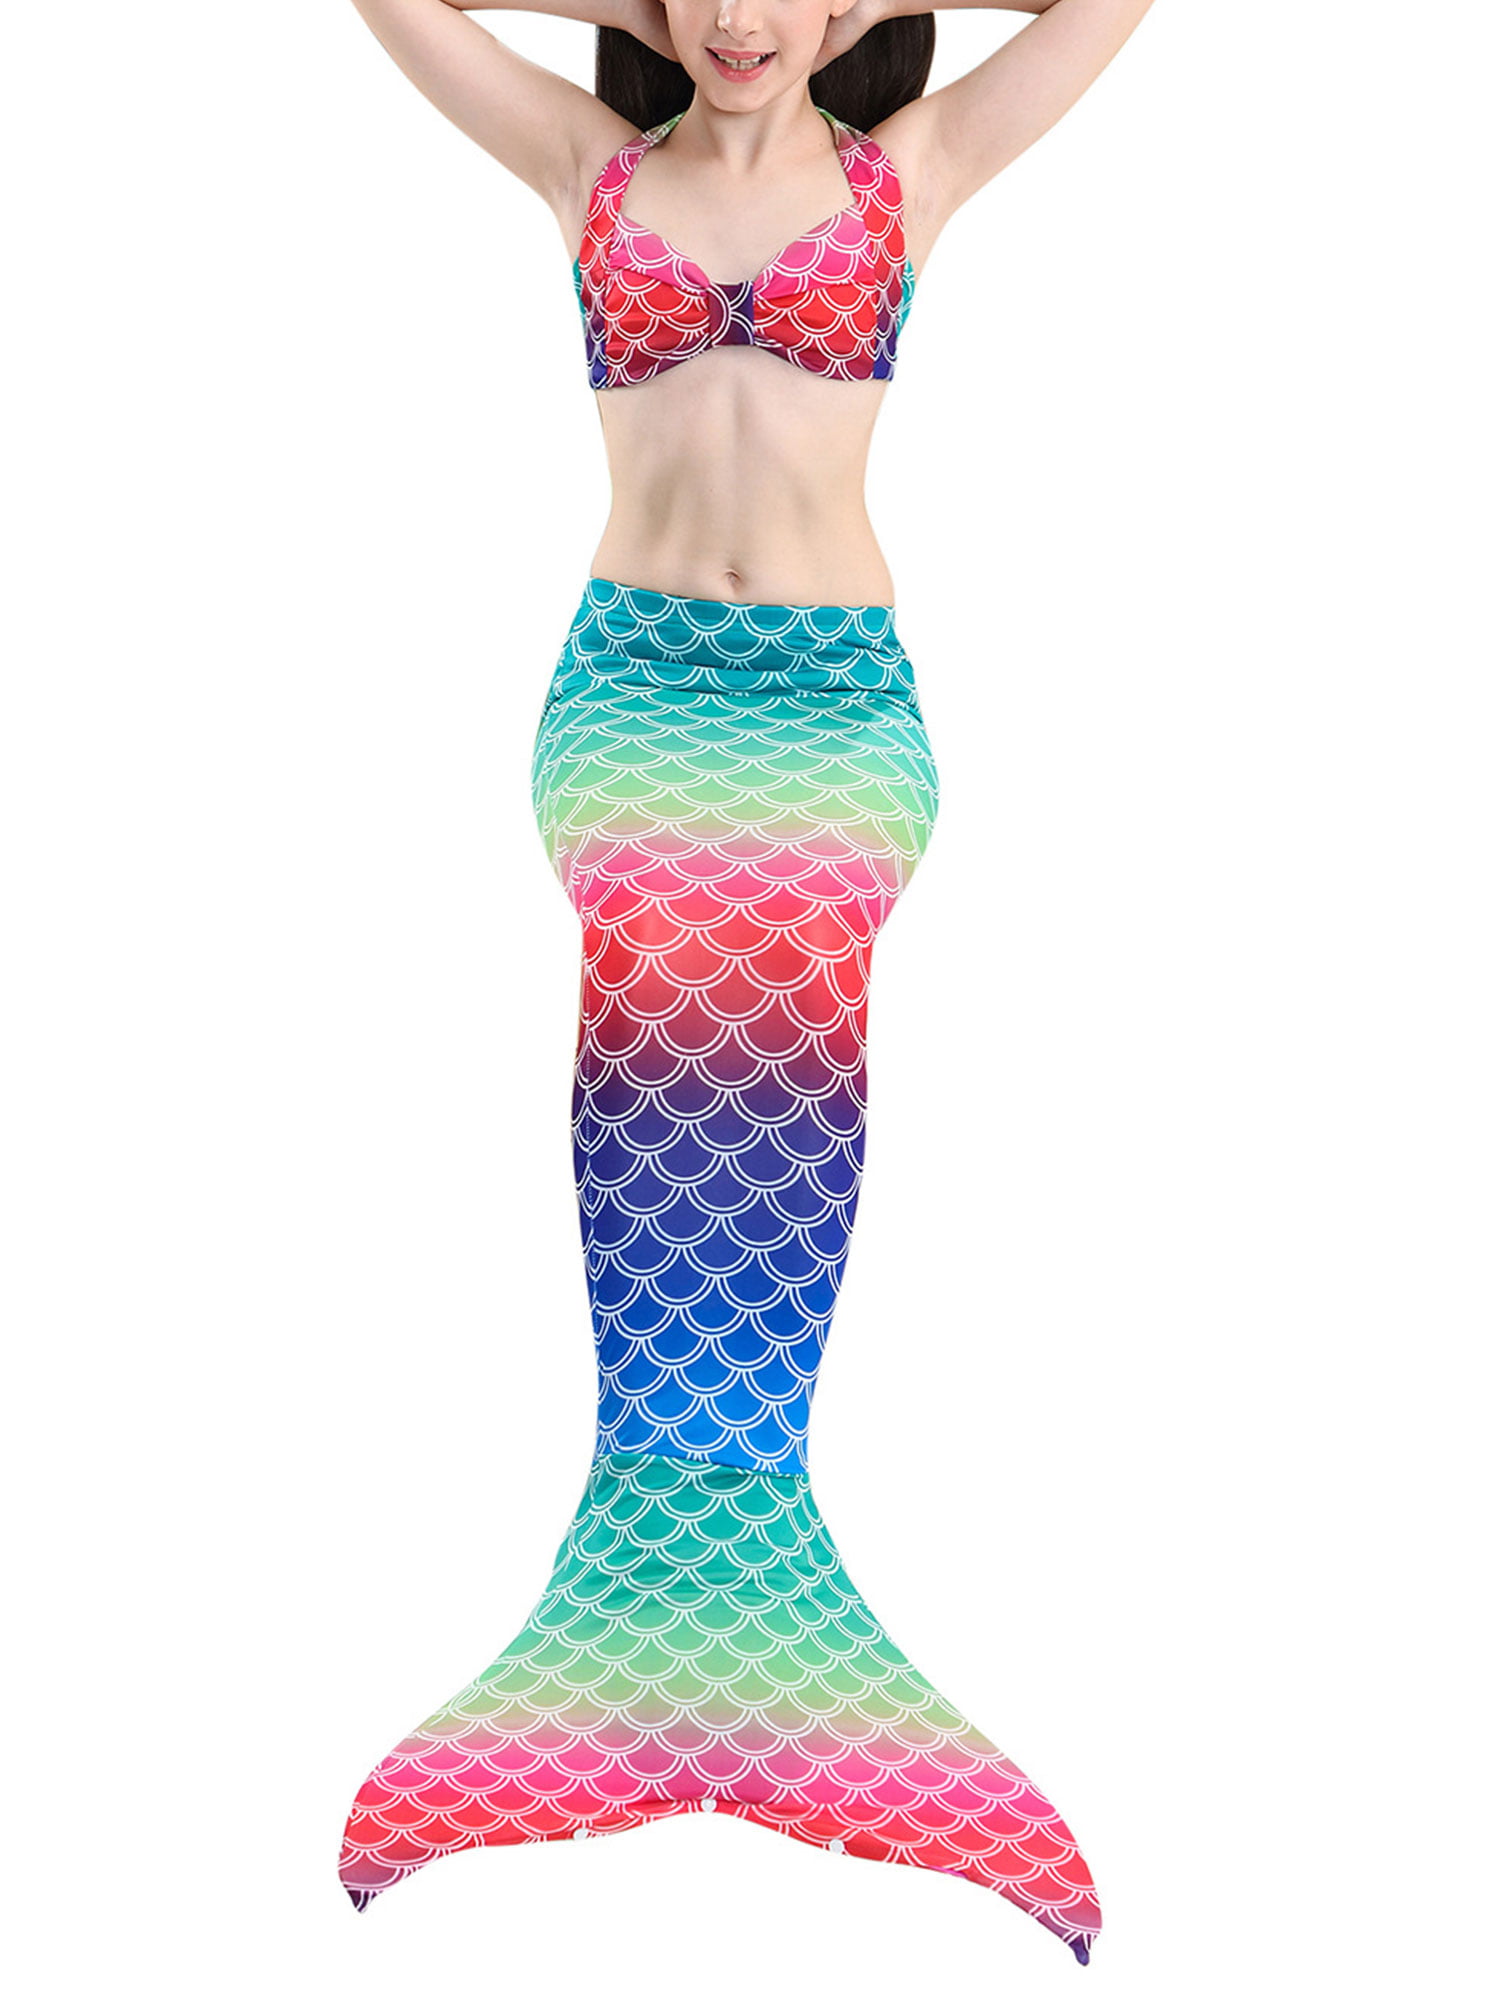 Girls Little Mermaid Bikini Swimwear Swimsuit Swimming Costume tail with monofin 